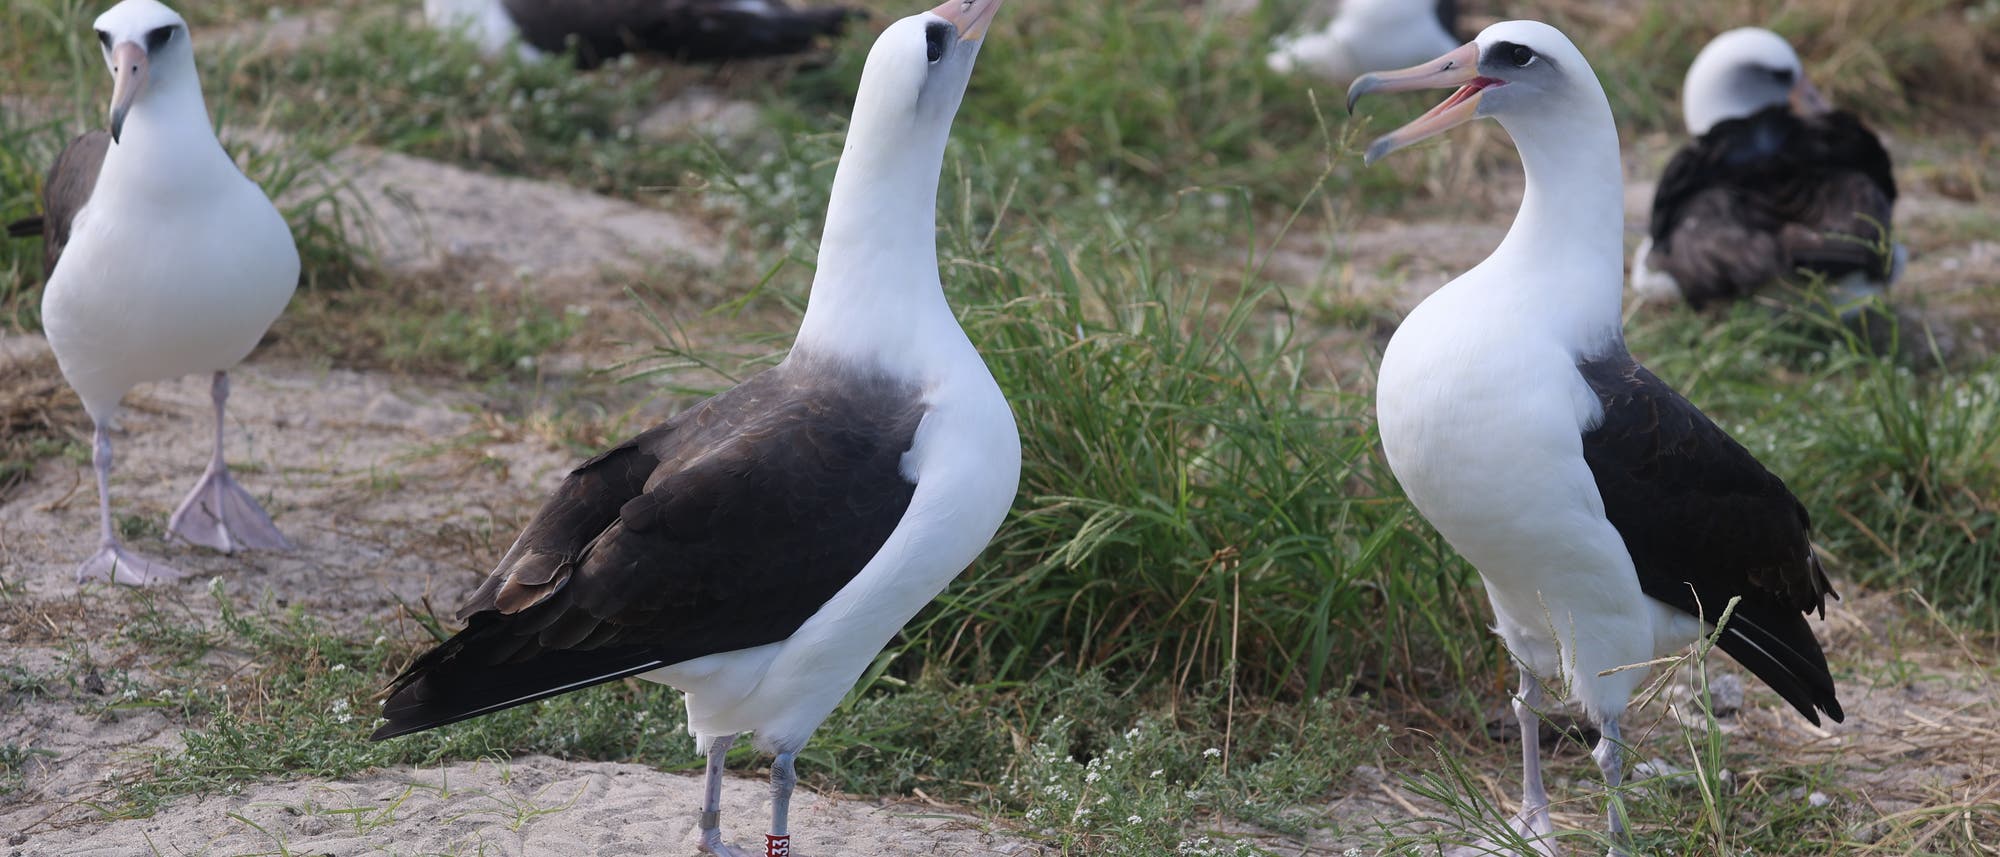 Zwei schwarzweiße Laysan-Albatrosse stehen sich gegenüber. Der rechte Vogel hat den Schnabel geöffnet, der linke reckt den Kopf in die Höhe. Im Hintergrund sind weitere Artgenossen zu sehen.